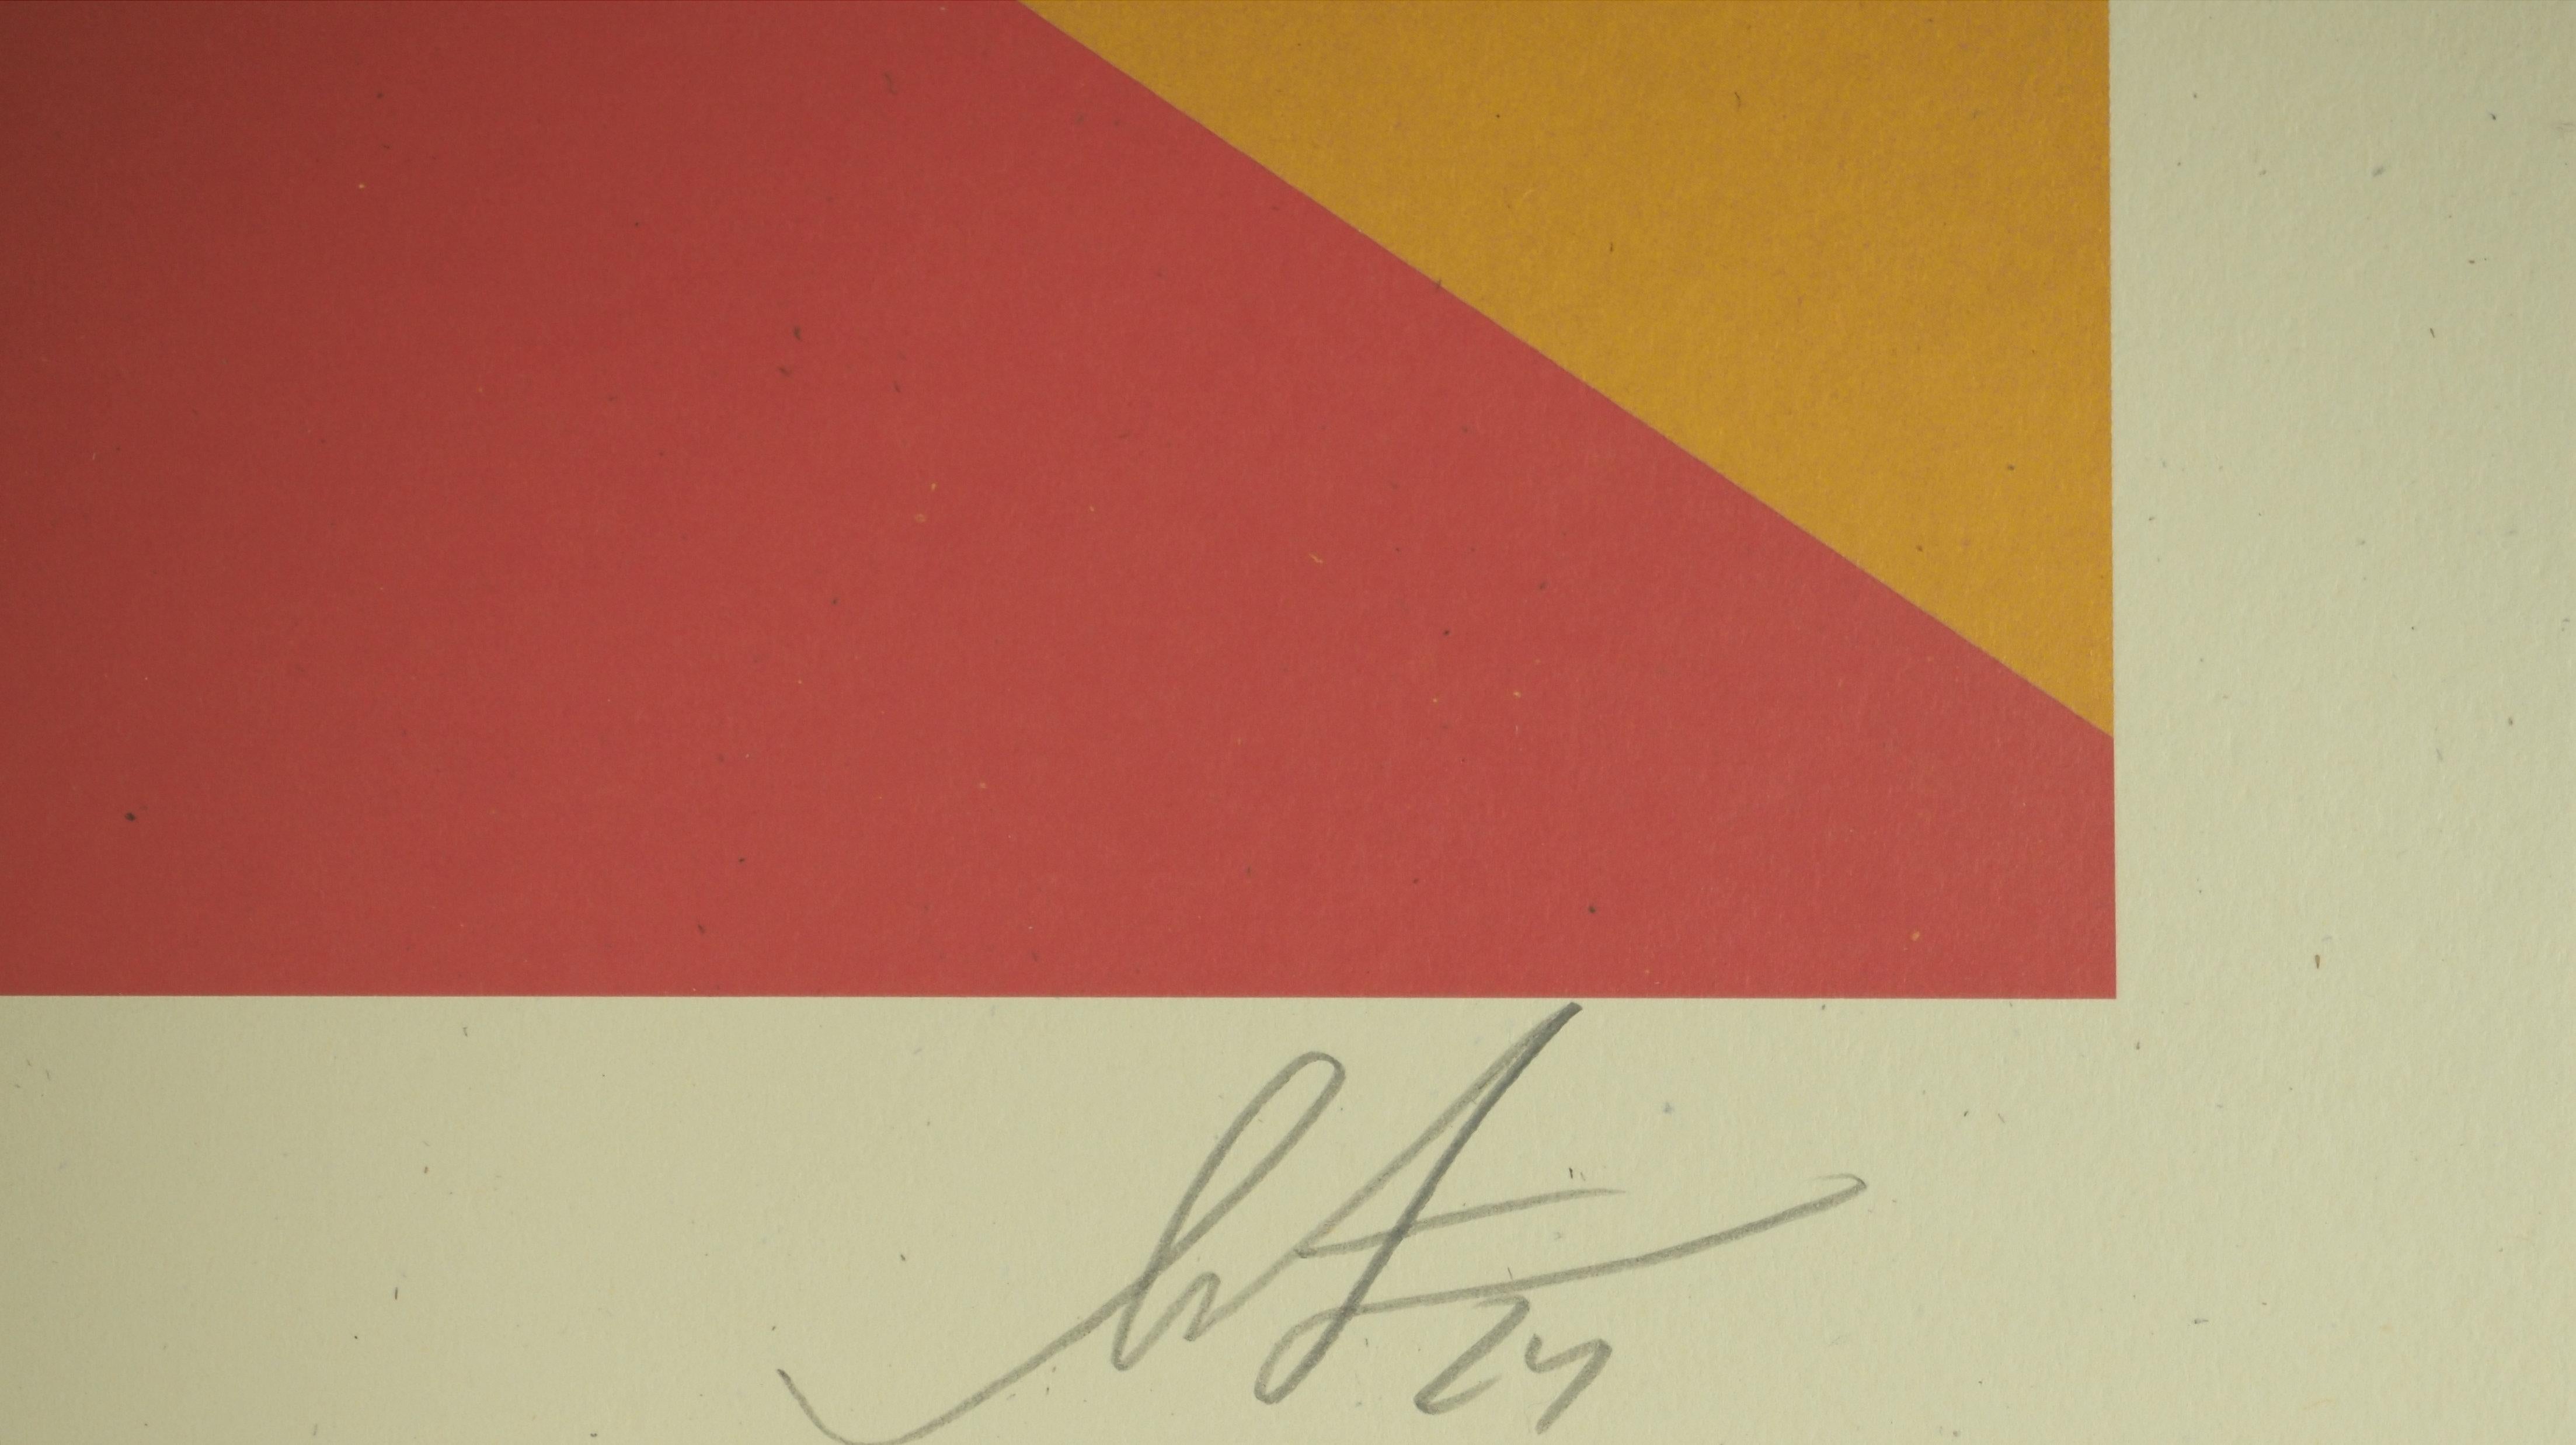 Shepard Fairey
Ange du Lotus

Sérigraphie
Signé au crayon par l'artiste. 
Épreuve non numérotée
Taille 91 x 61 cm (c. 36 x 24 in)

Excellent état